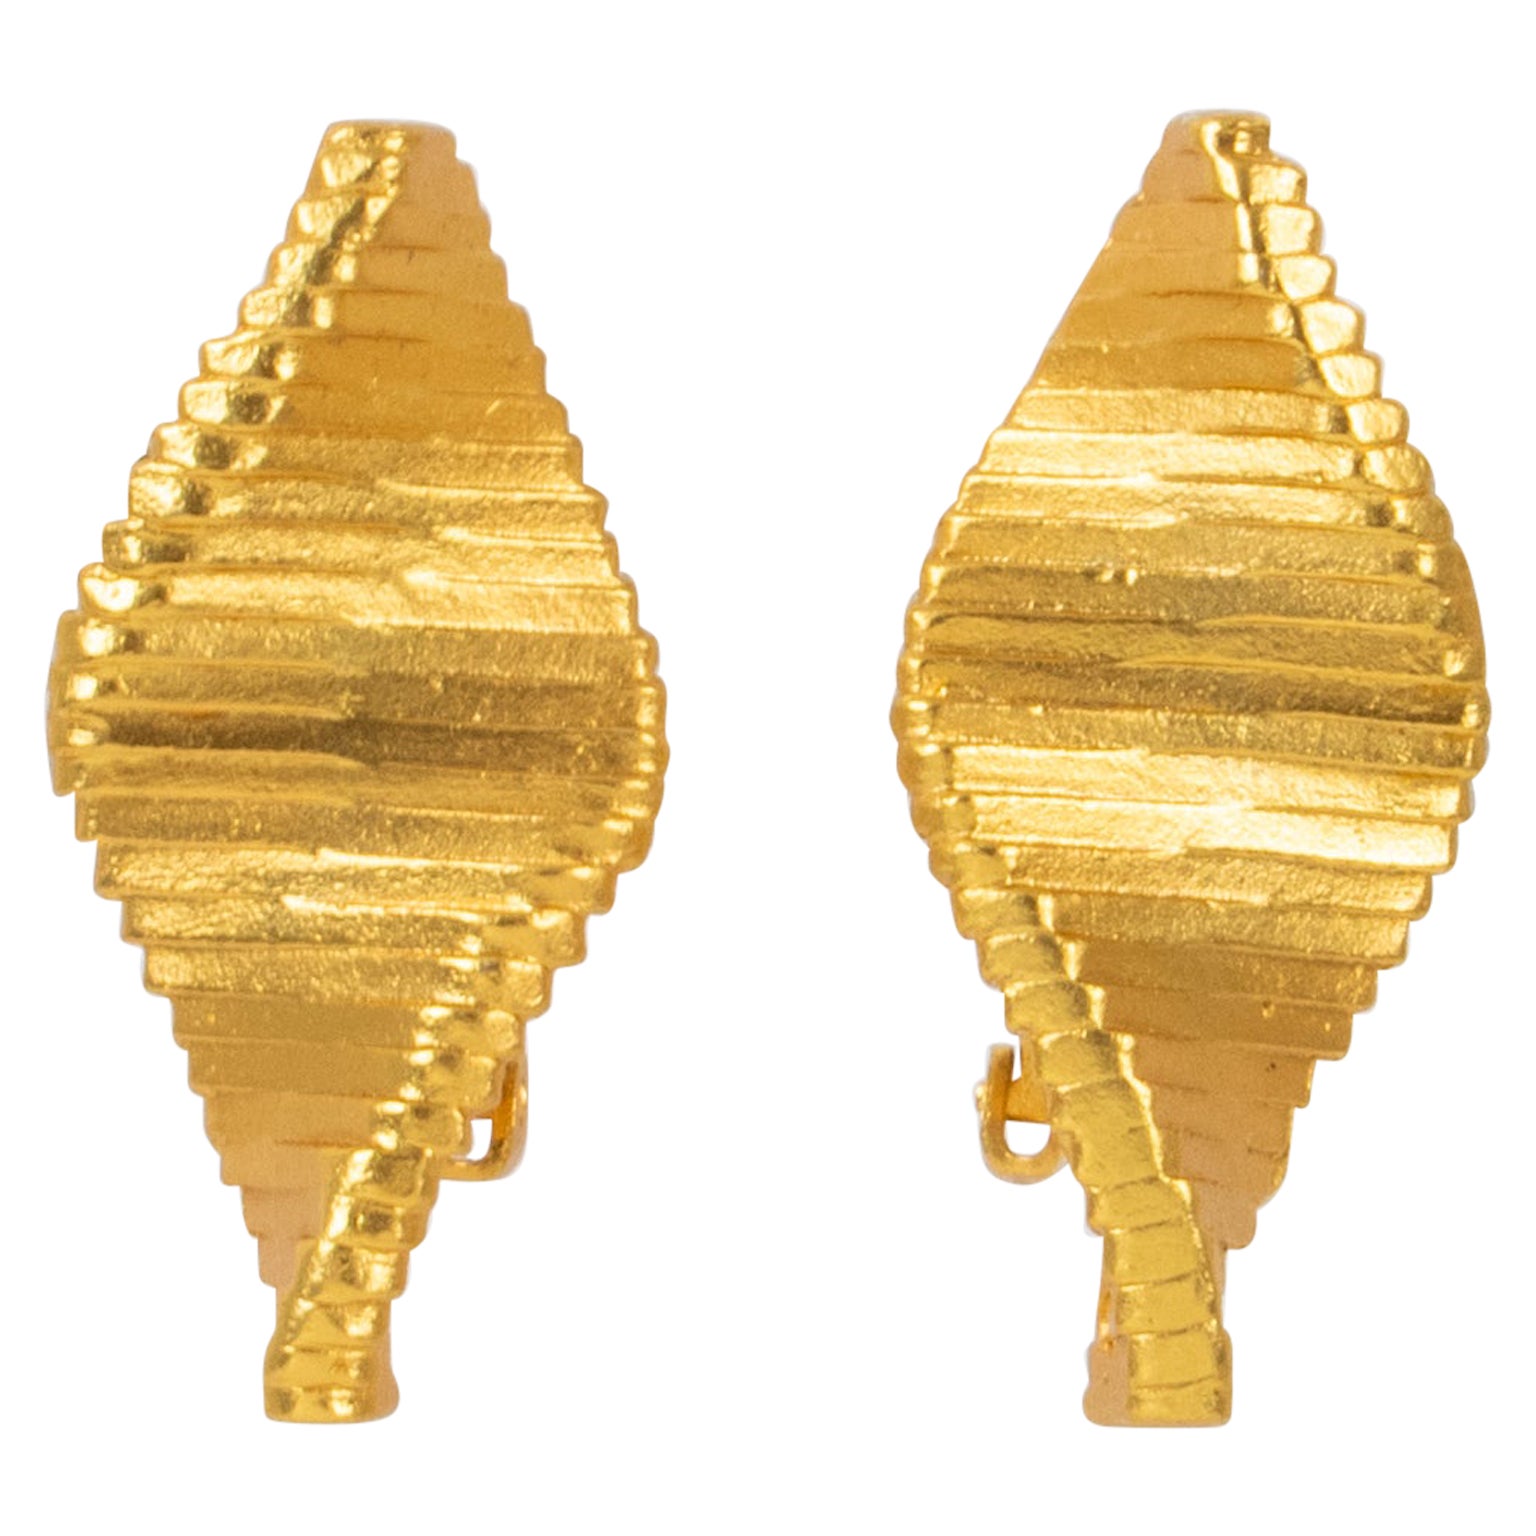 Claude Montana Futuristische vergoldete Metall-Clip-Ohrringe